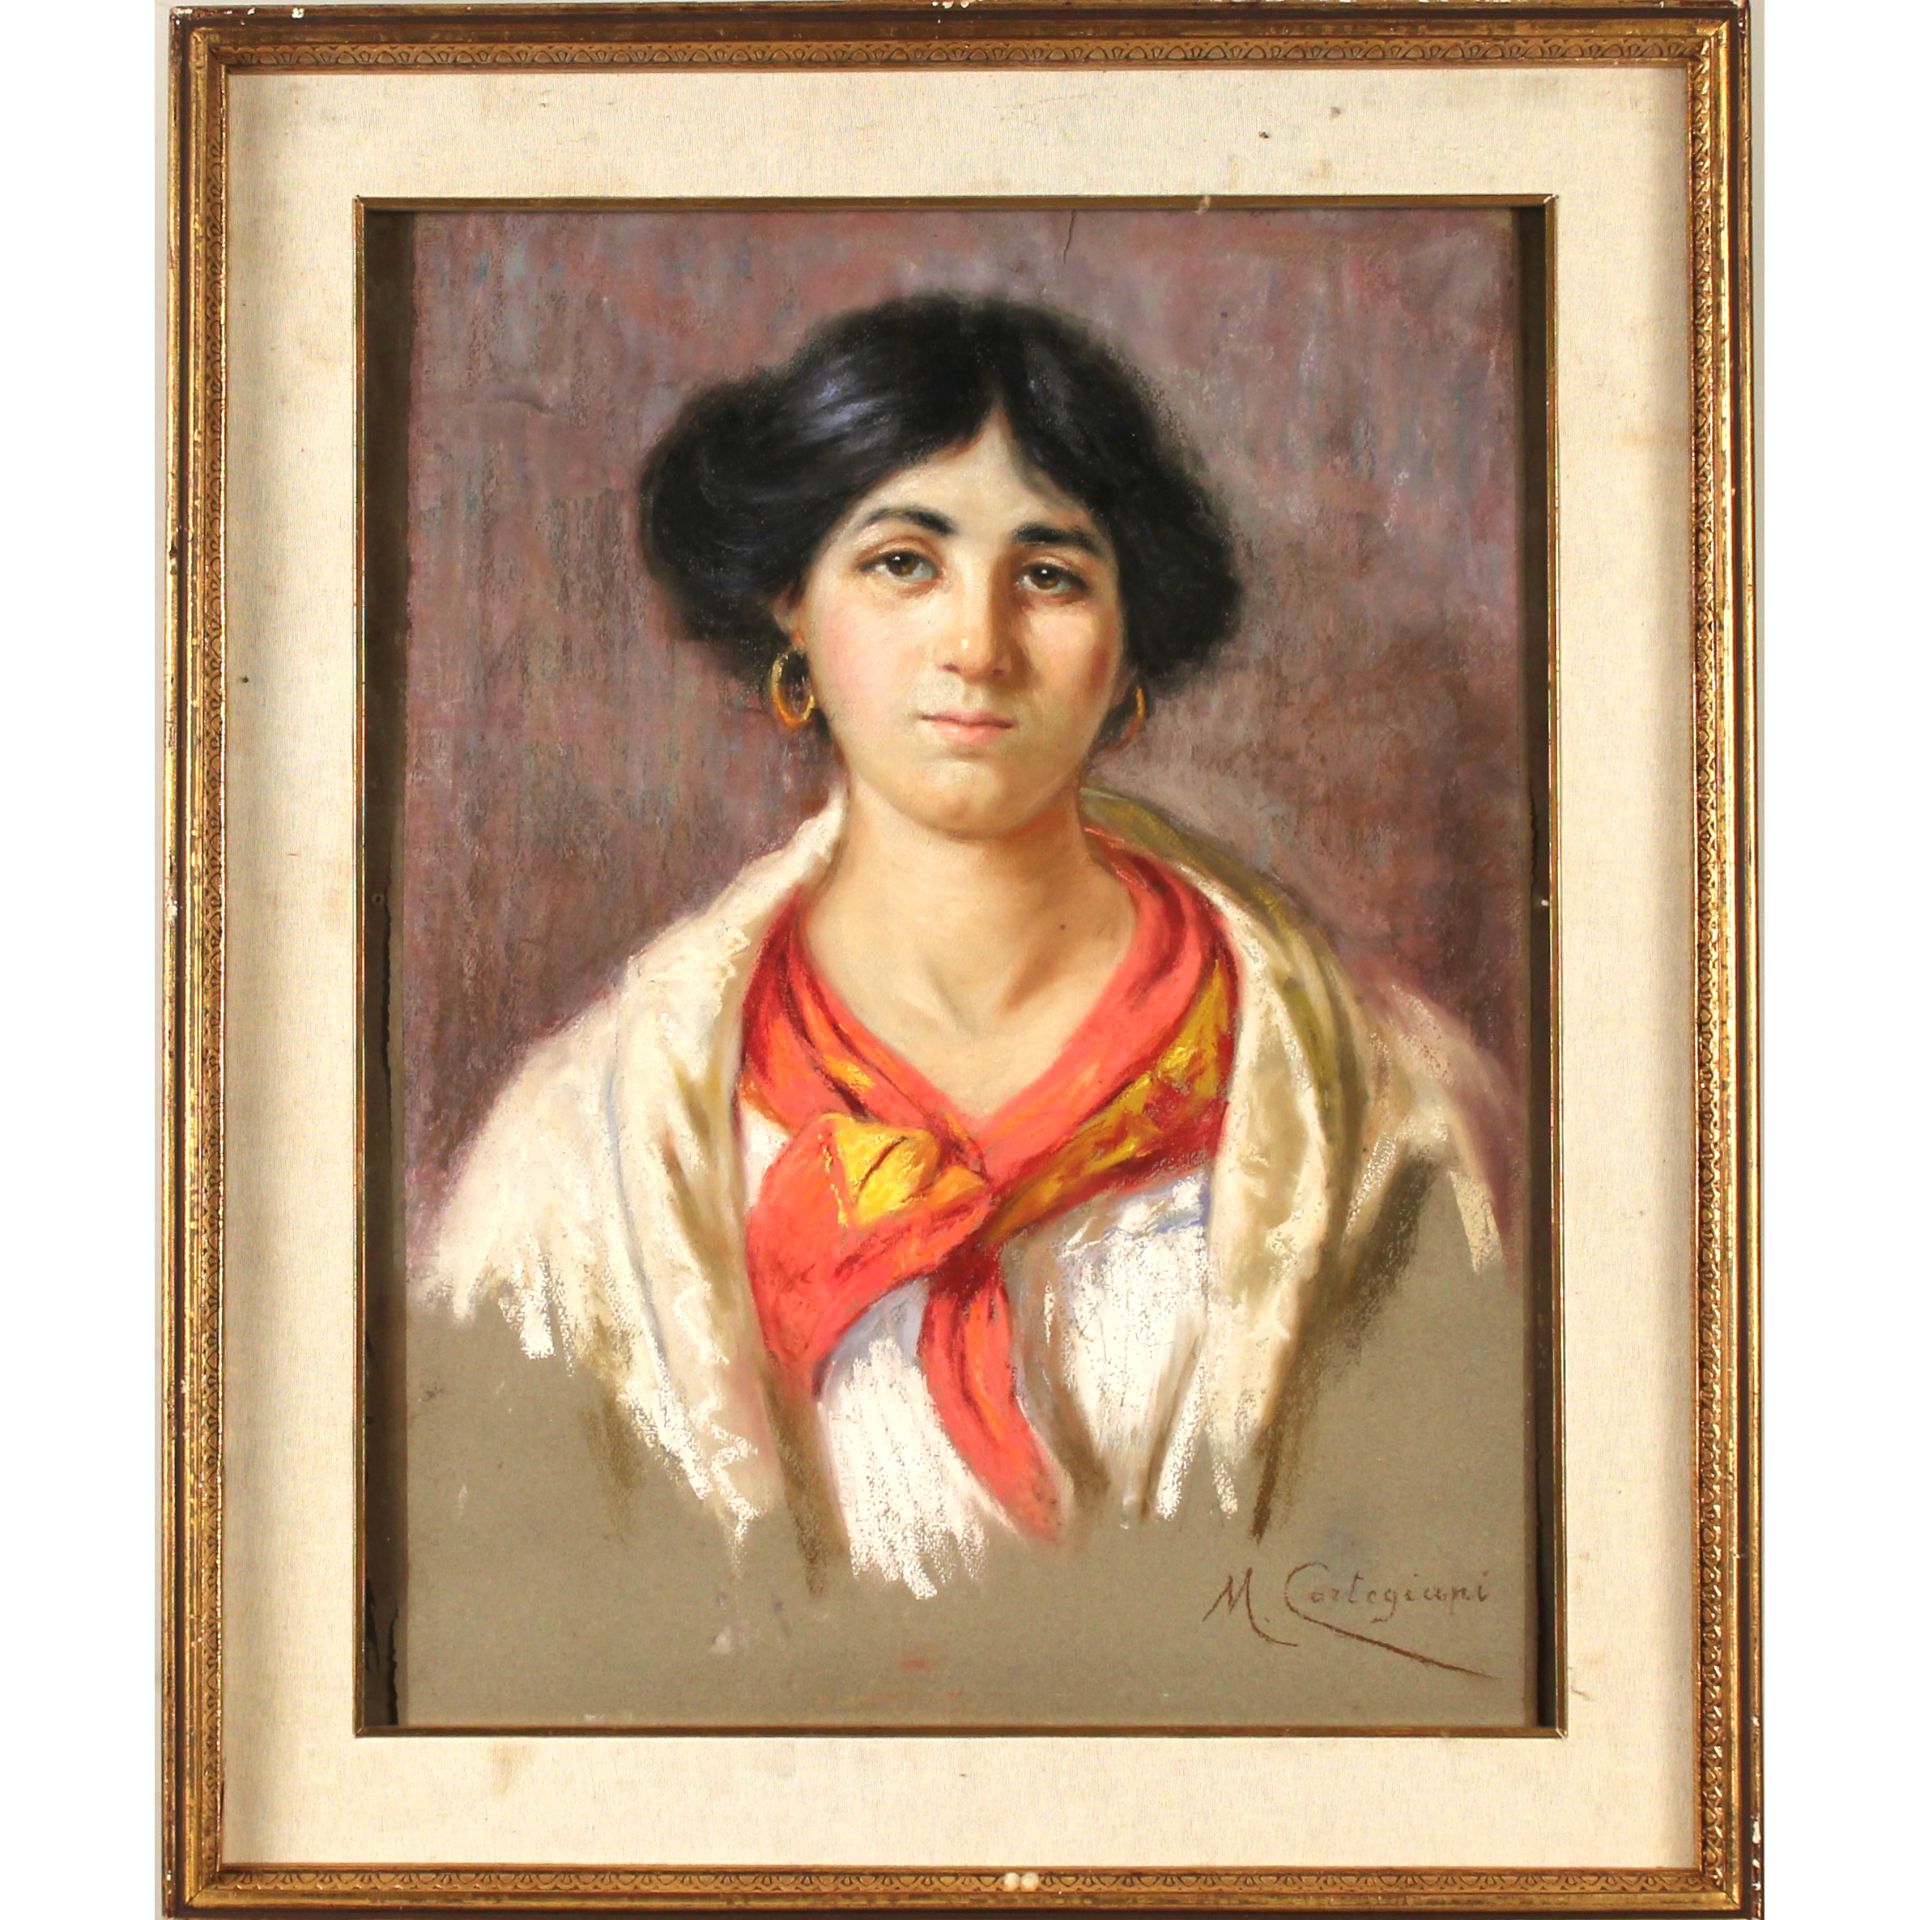 Michele Cortegiani (1857/1919) “Ritratto di donna” - "Portrait of a Woman"